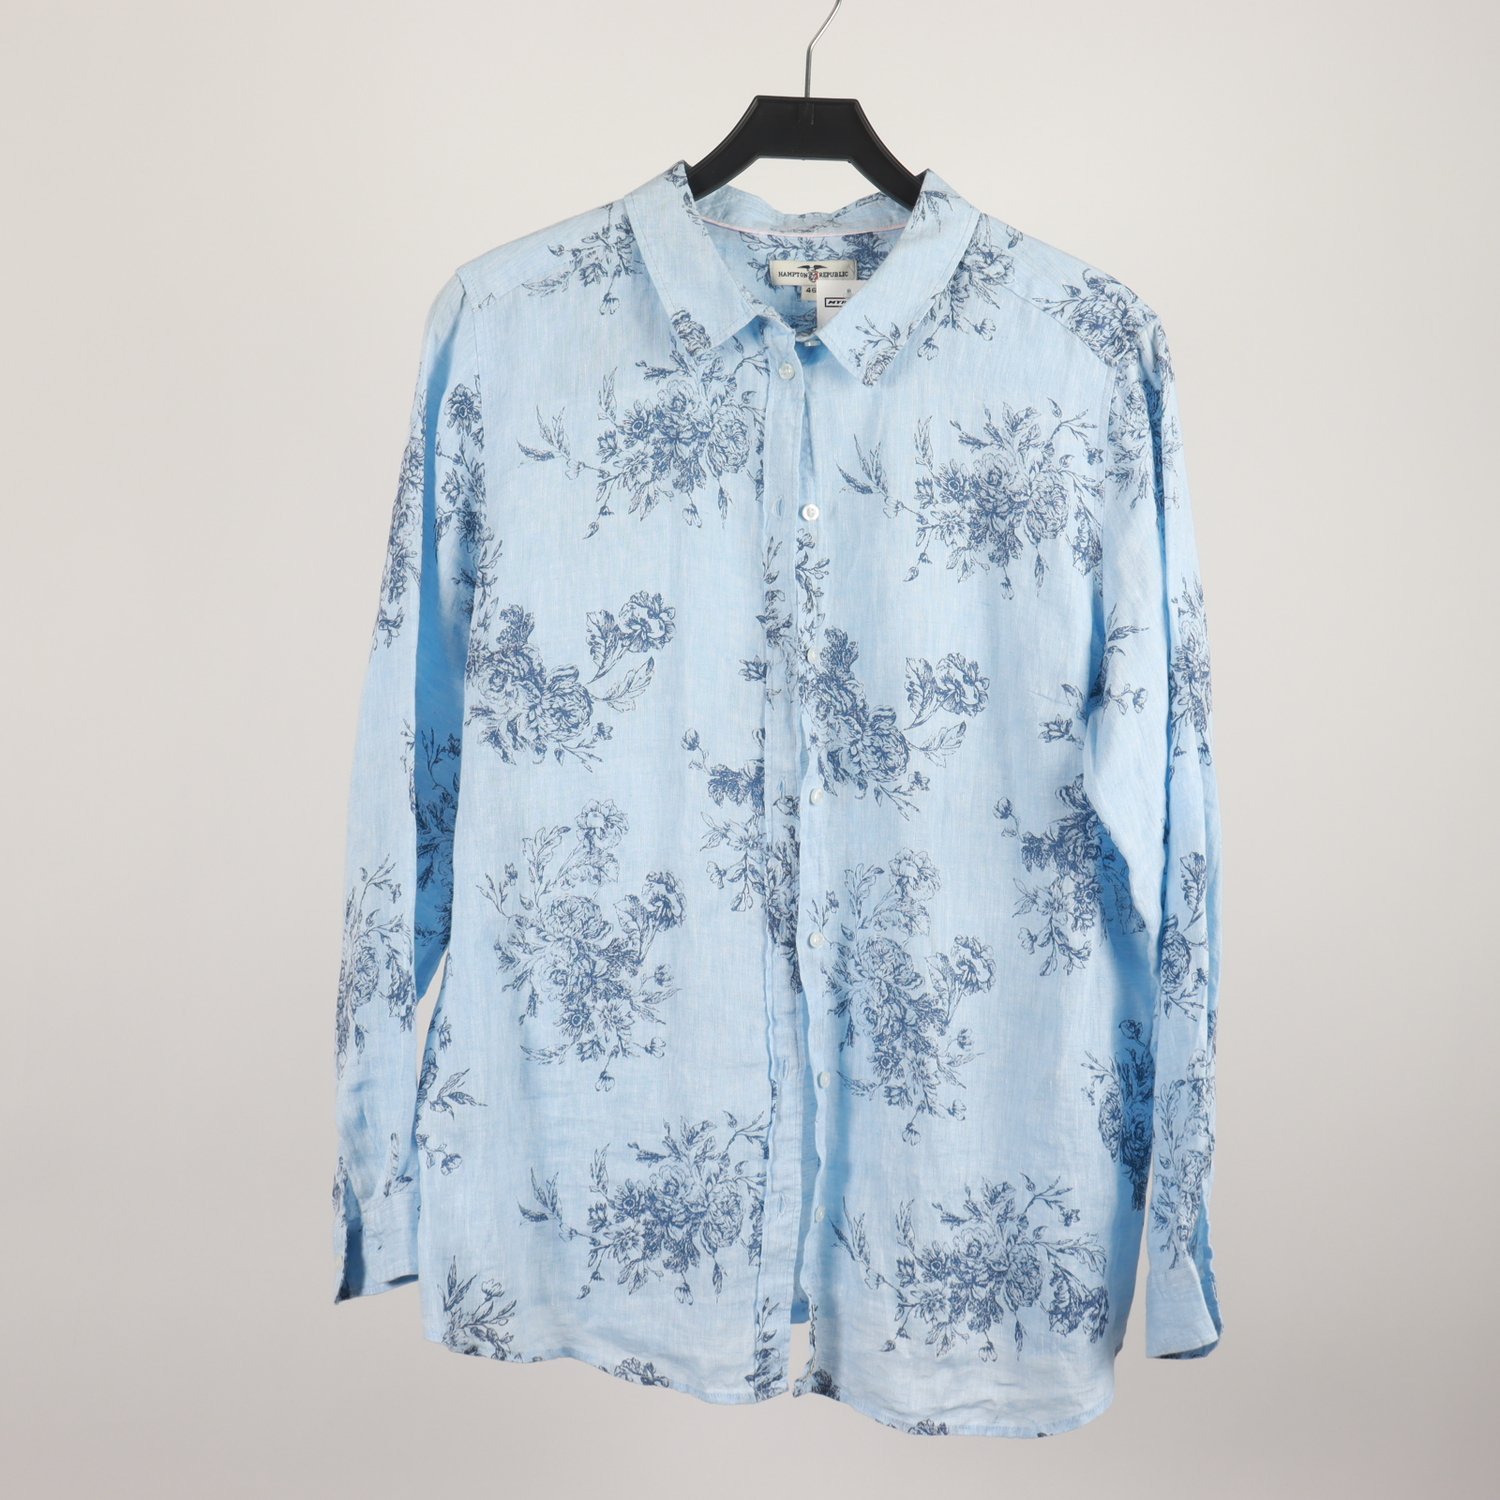 Skjorta, Hampton Republic, blå, mönstrad, 100% lin, stl. 46